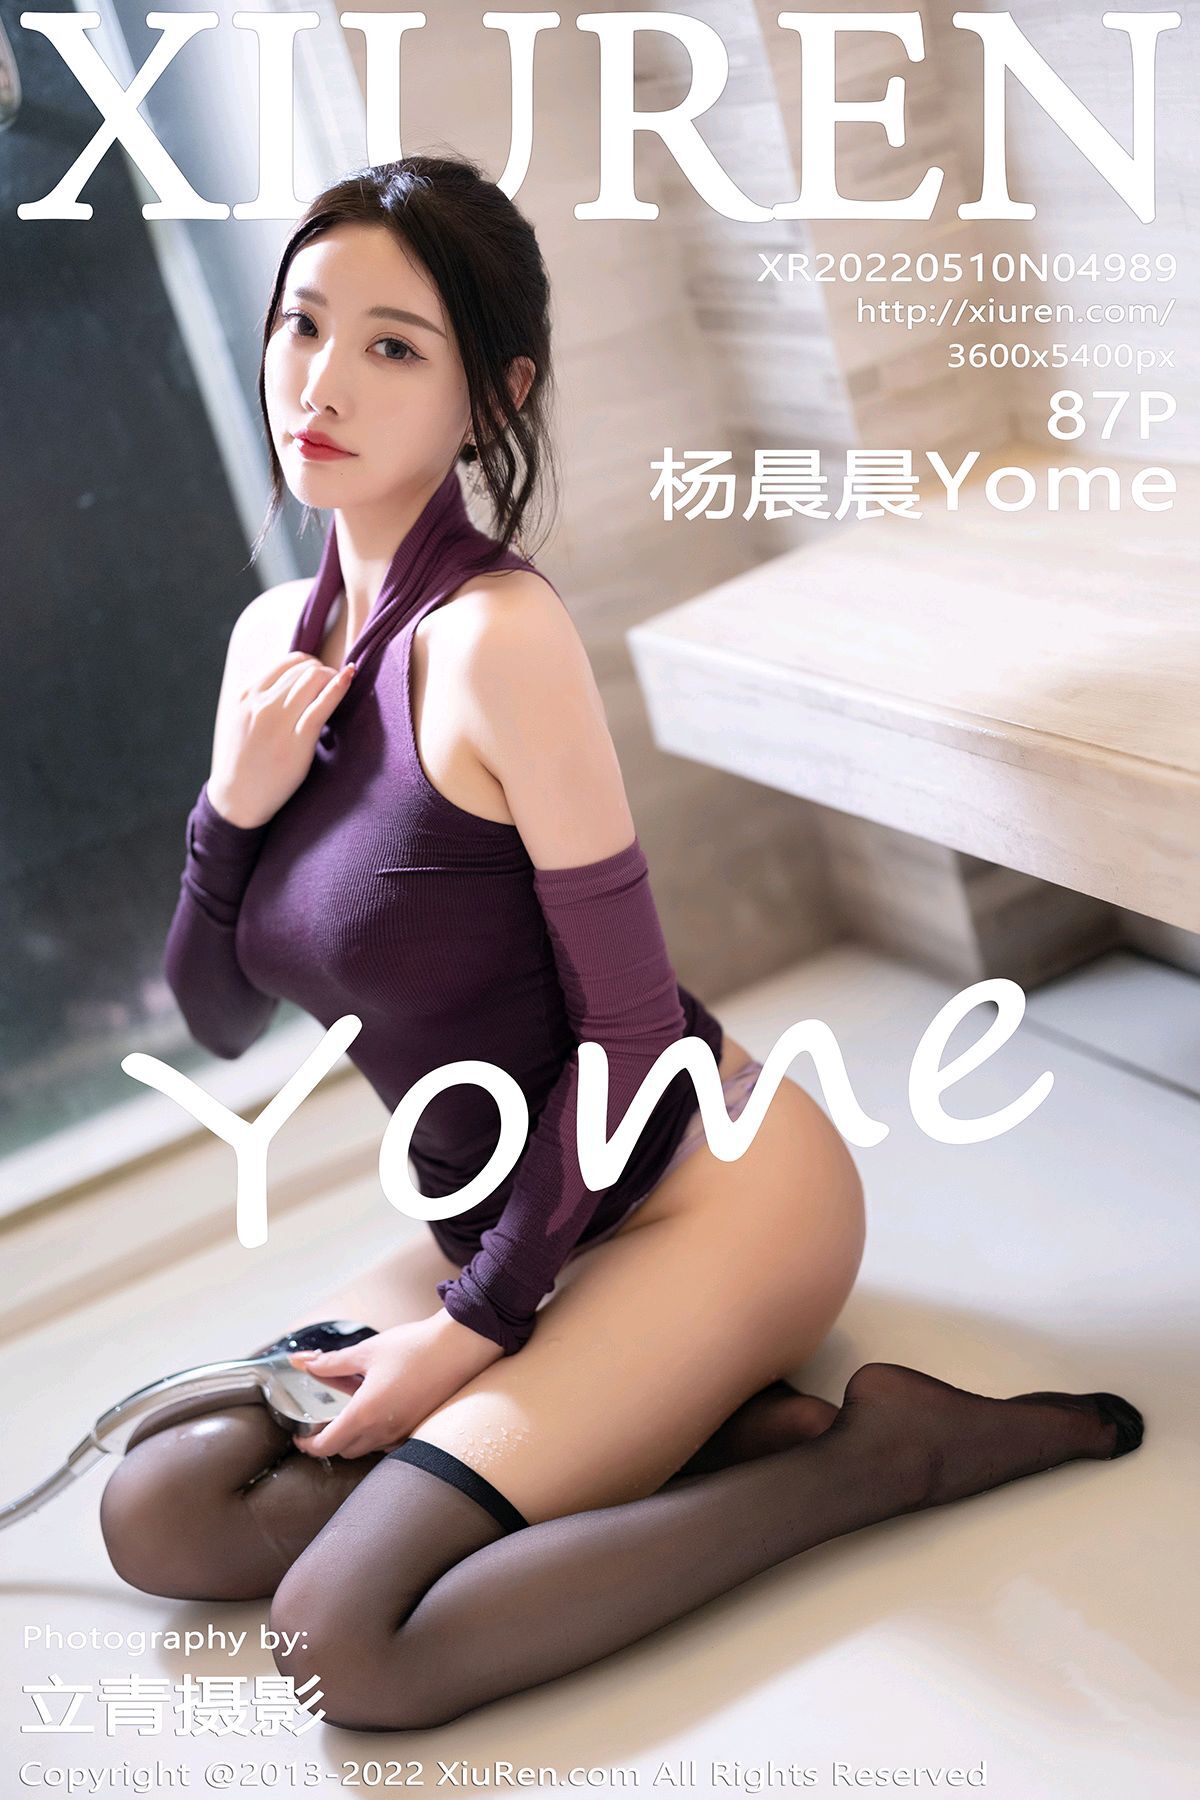 Xiuren Show people 2022.05.10 NO.4989 Yang Chenchen Yome